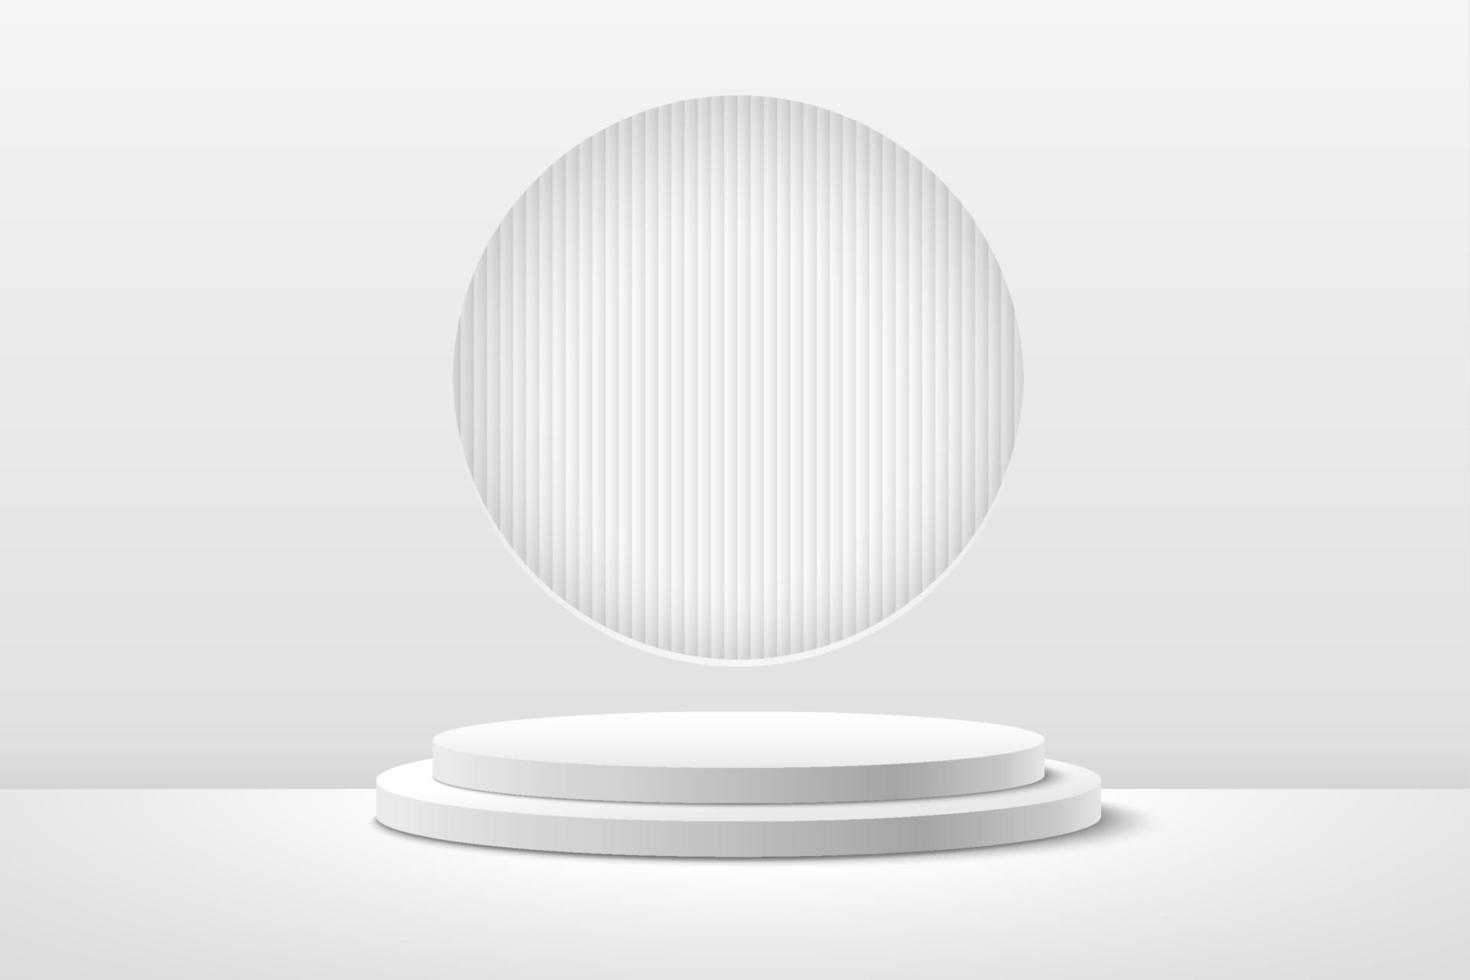 abstrakt rund display för produkt på hemsidan i modern. bakgrundsrendering med podium och minimal vit textur väggscen, 3D-rendering geometrisk form vit och grå färg. vektor